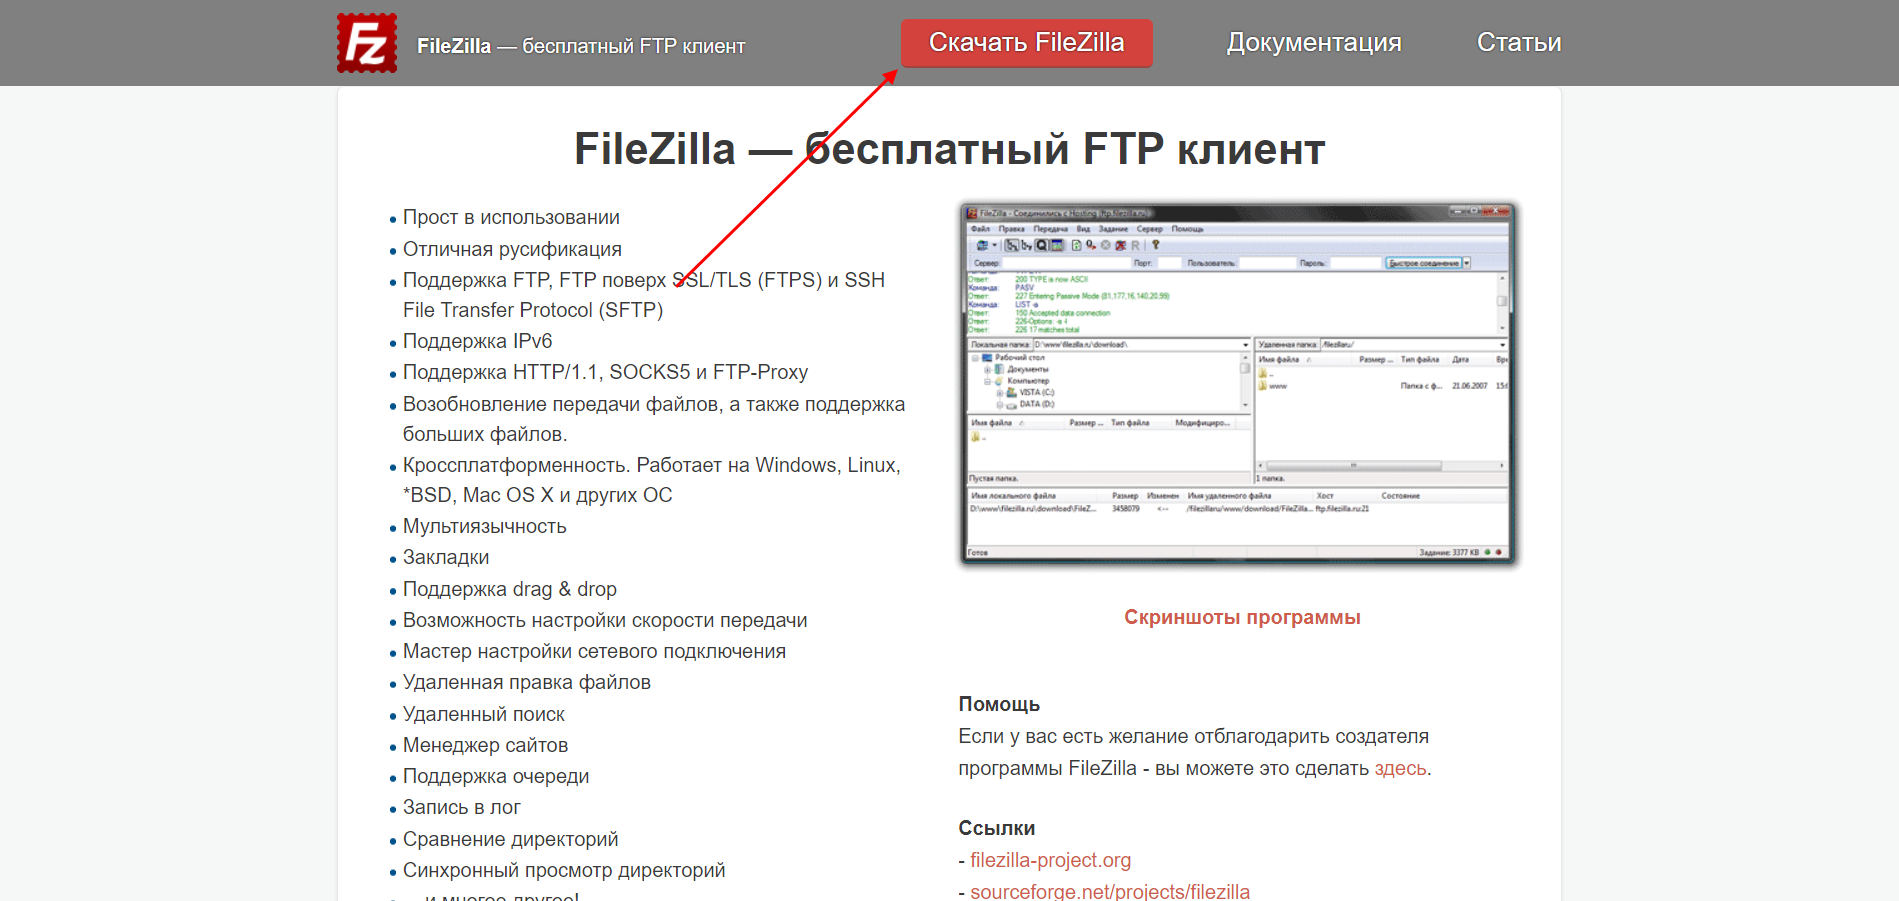 FileZilla скачать с официального сайта